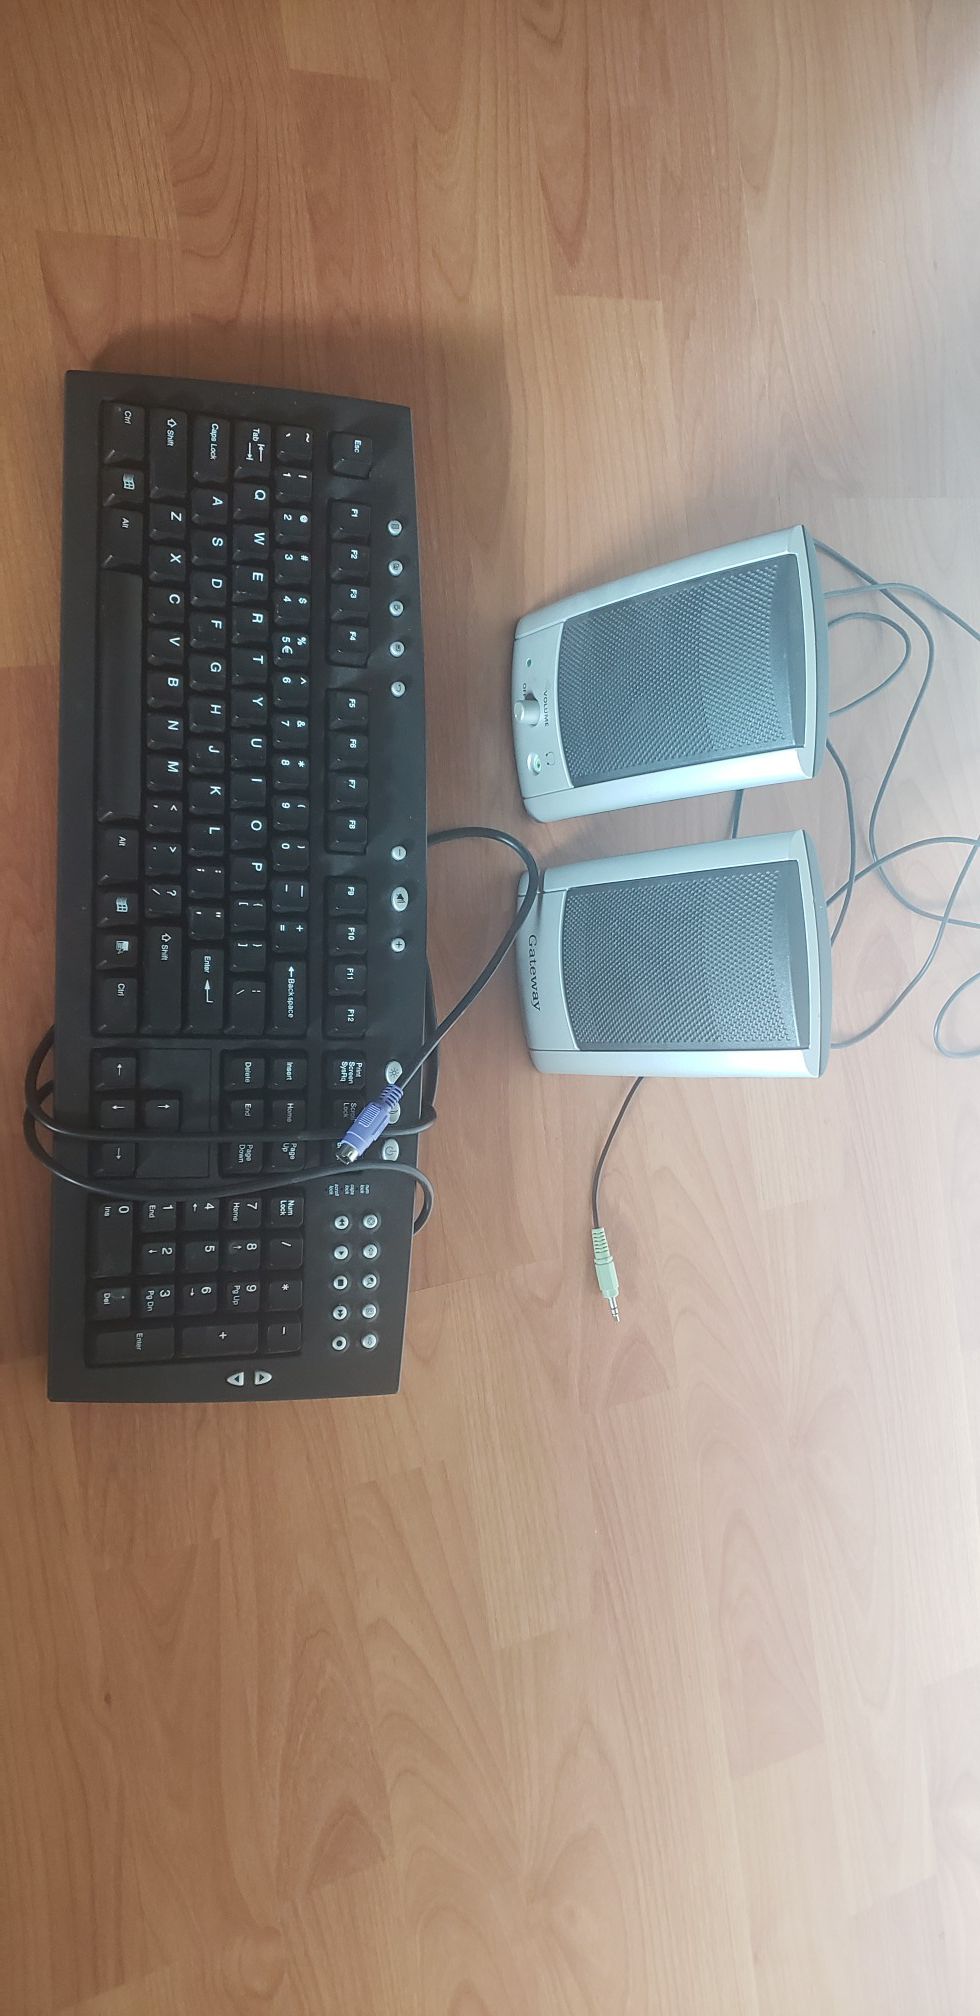 Computer keyboard & speakers